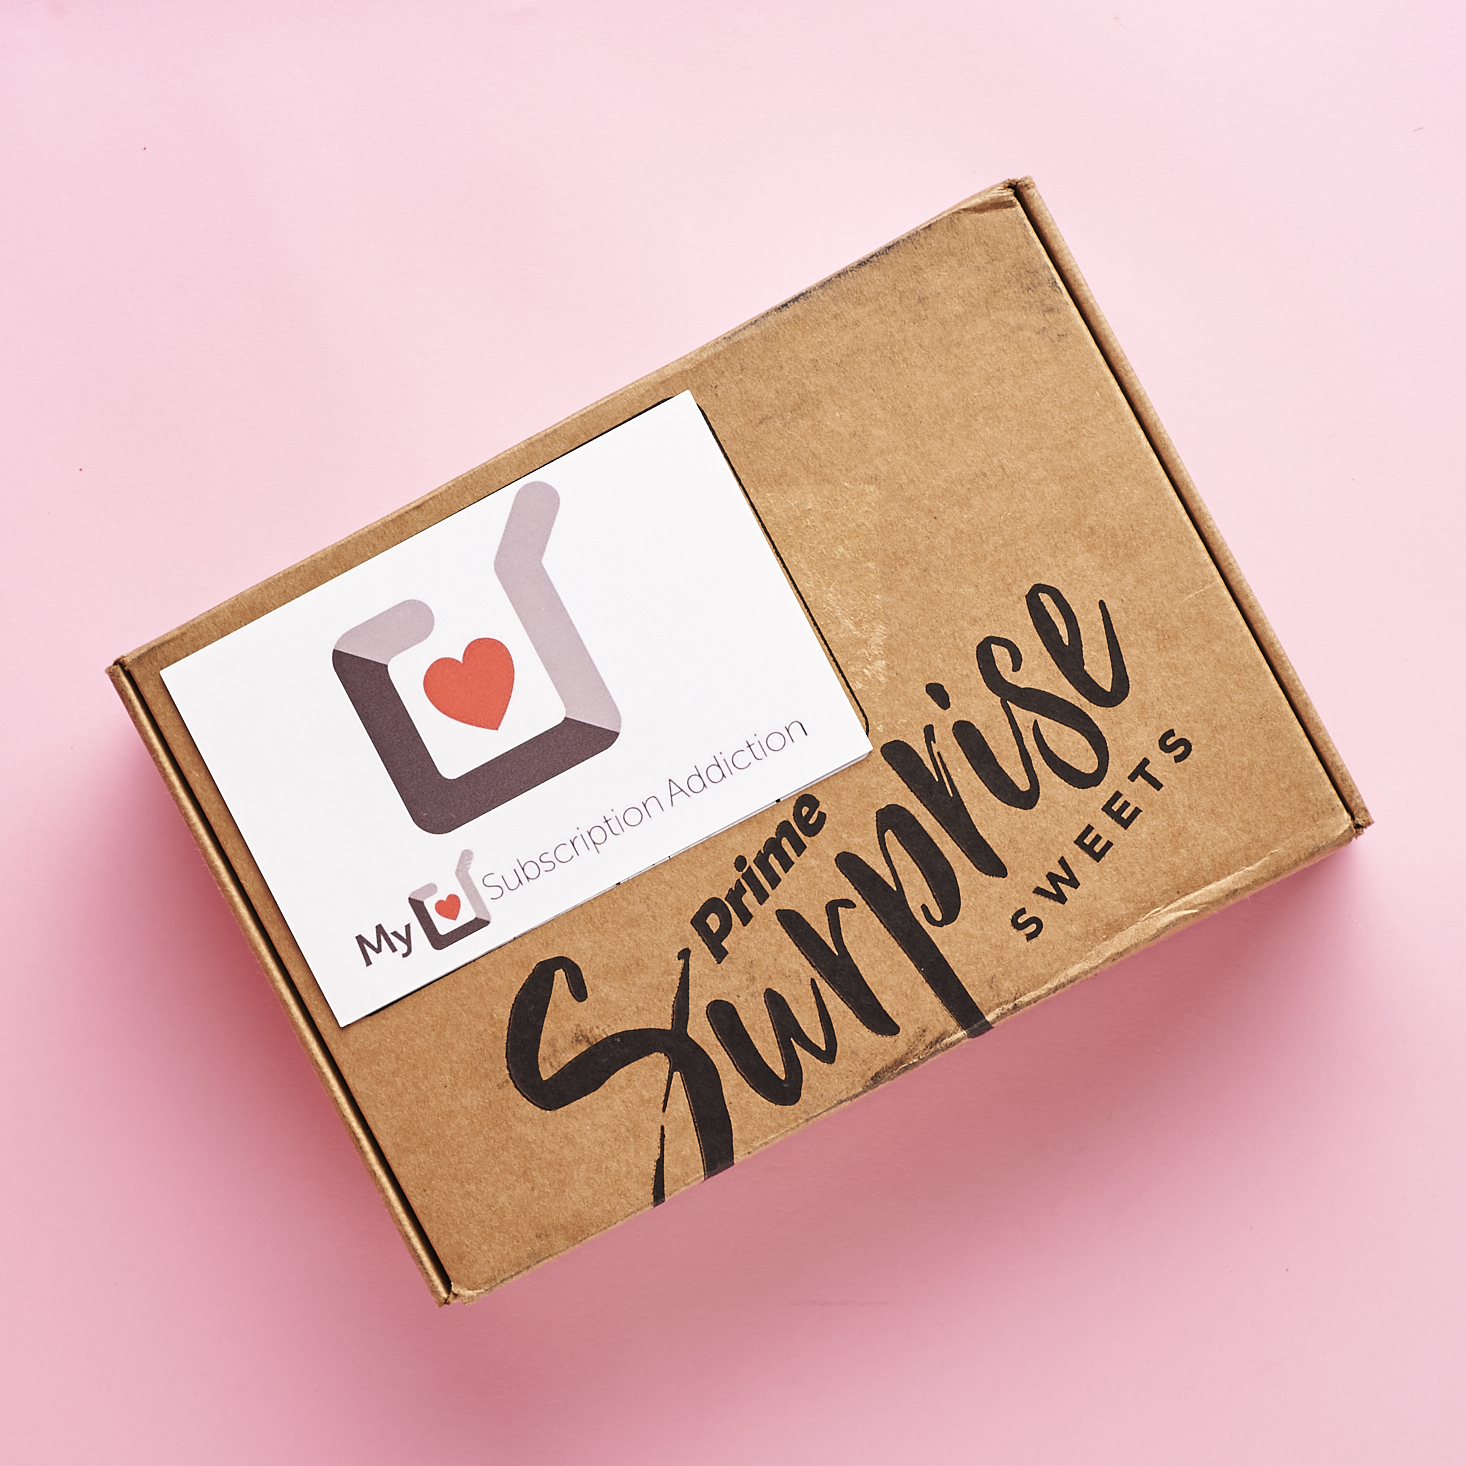 Amazon Prime Surprise Sweets Box Review – April 2017